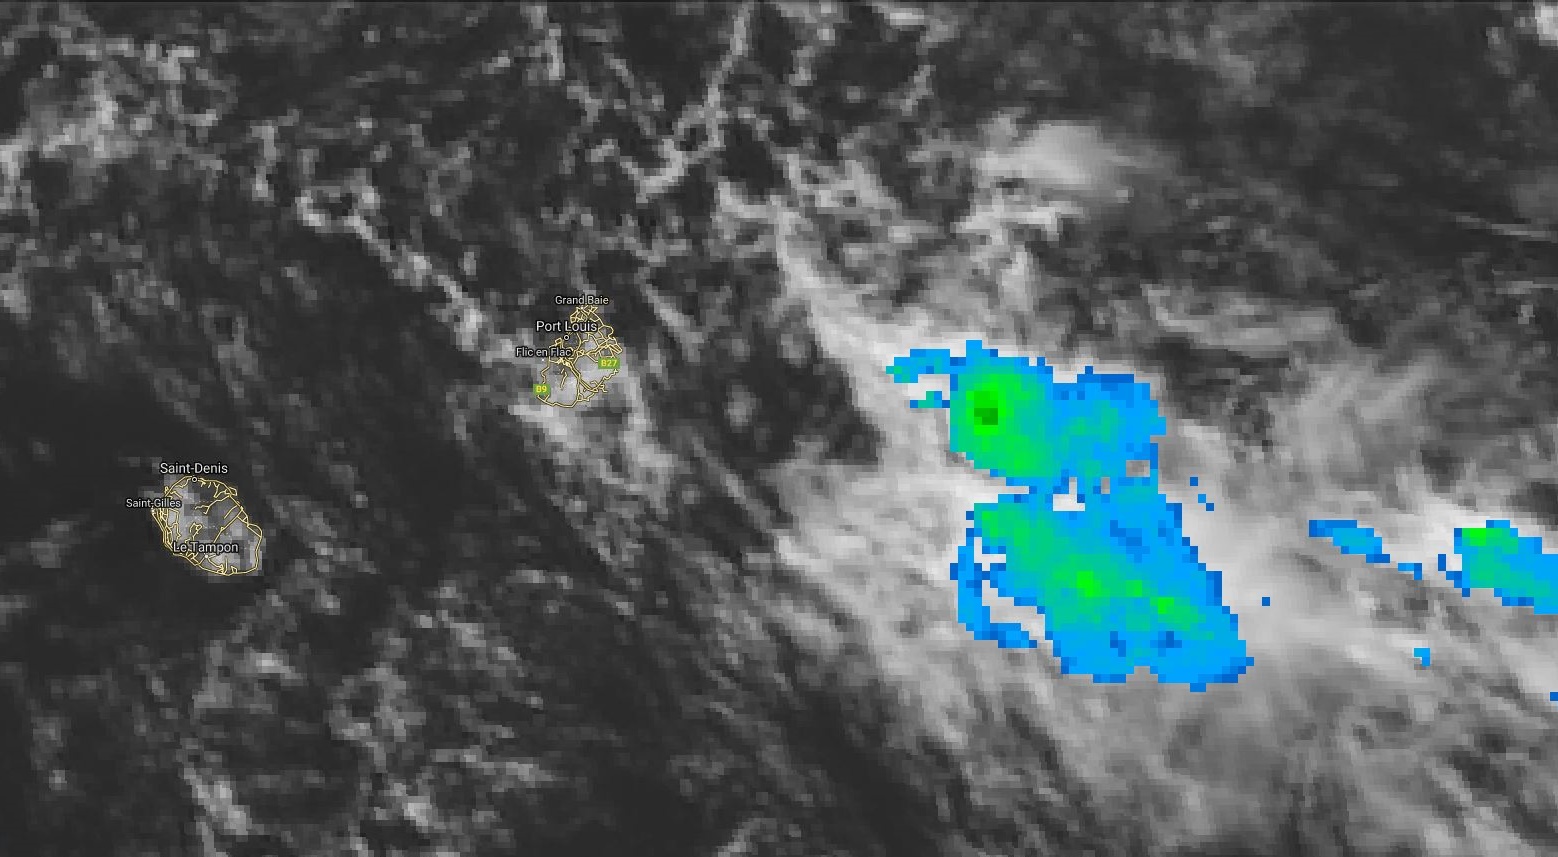 Photo satellite de midi: la zone d'instabilité gagne en activité à l'est sud-est de Maurice.